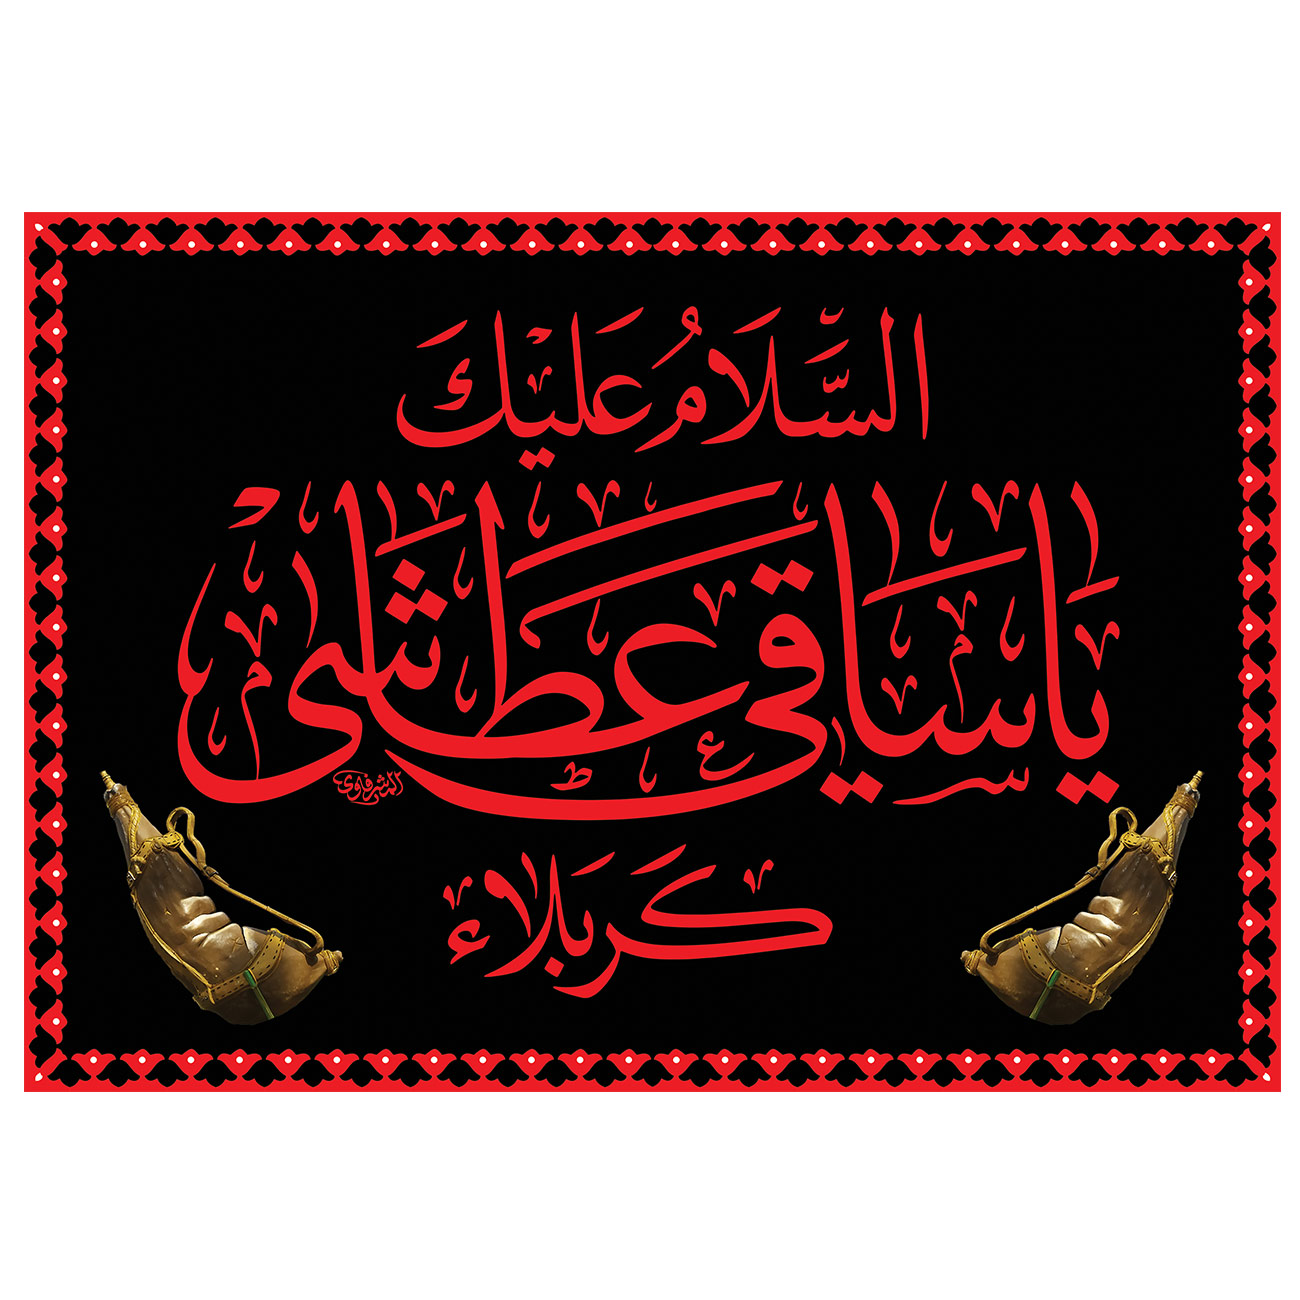 پرچم طرح مذهبی مدل السلام علیک یا ساقی عطاشی کربلاء کد 85